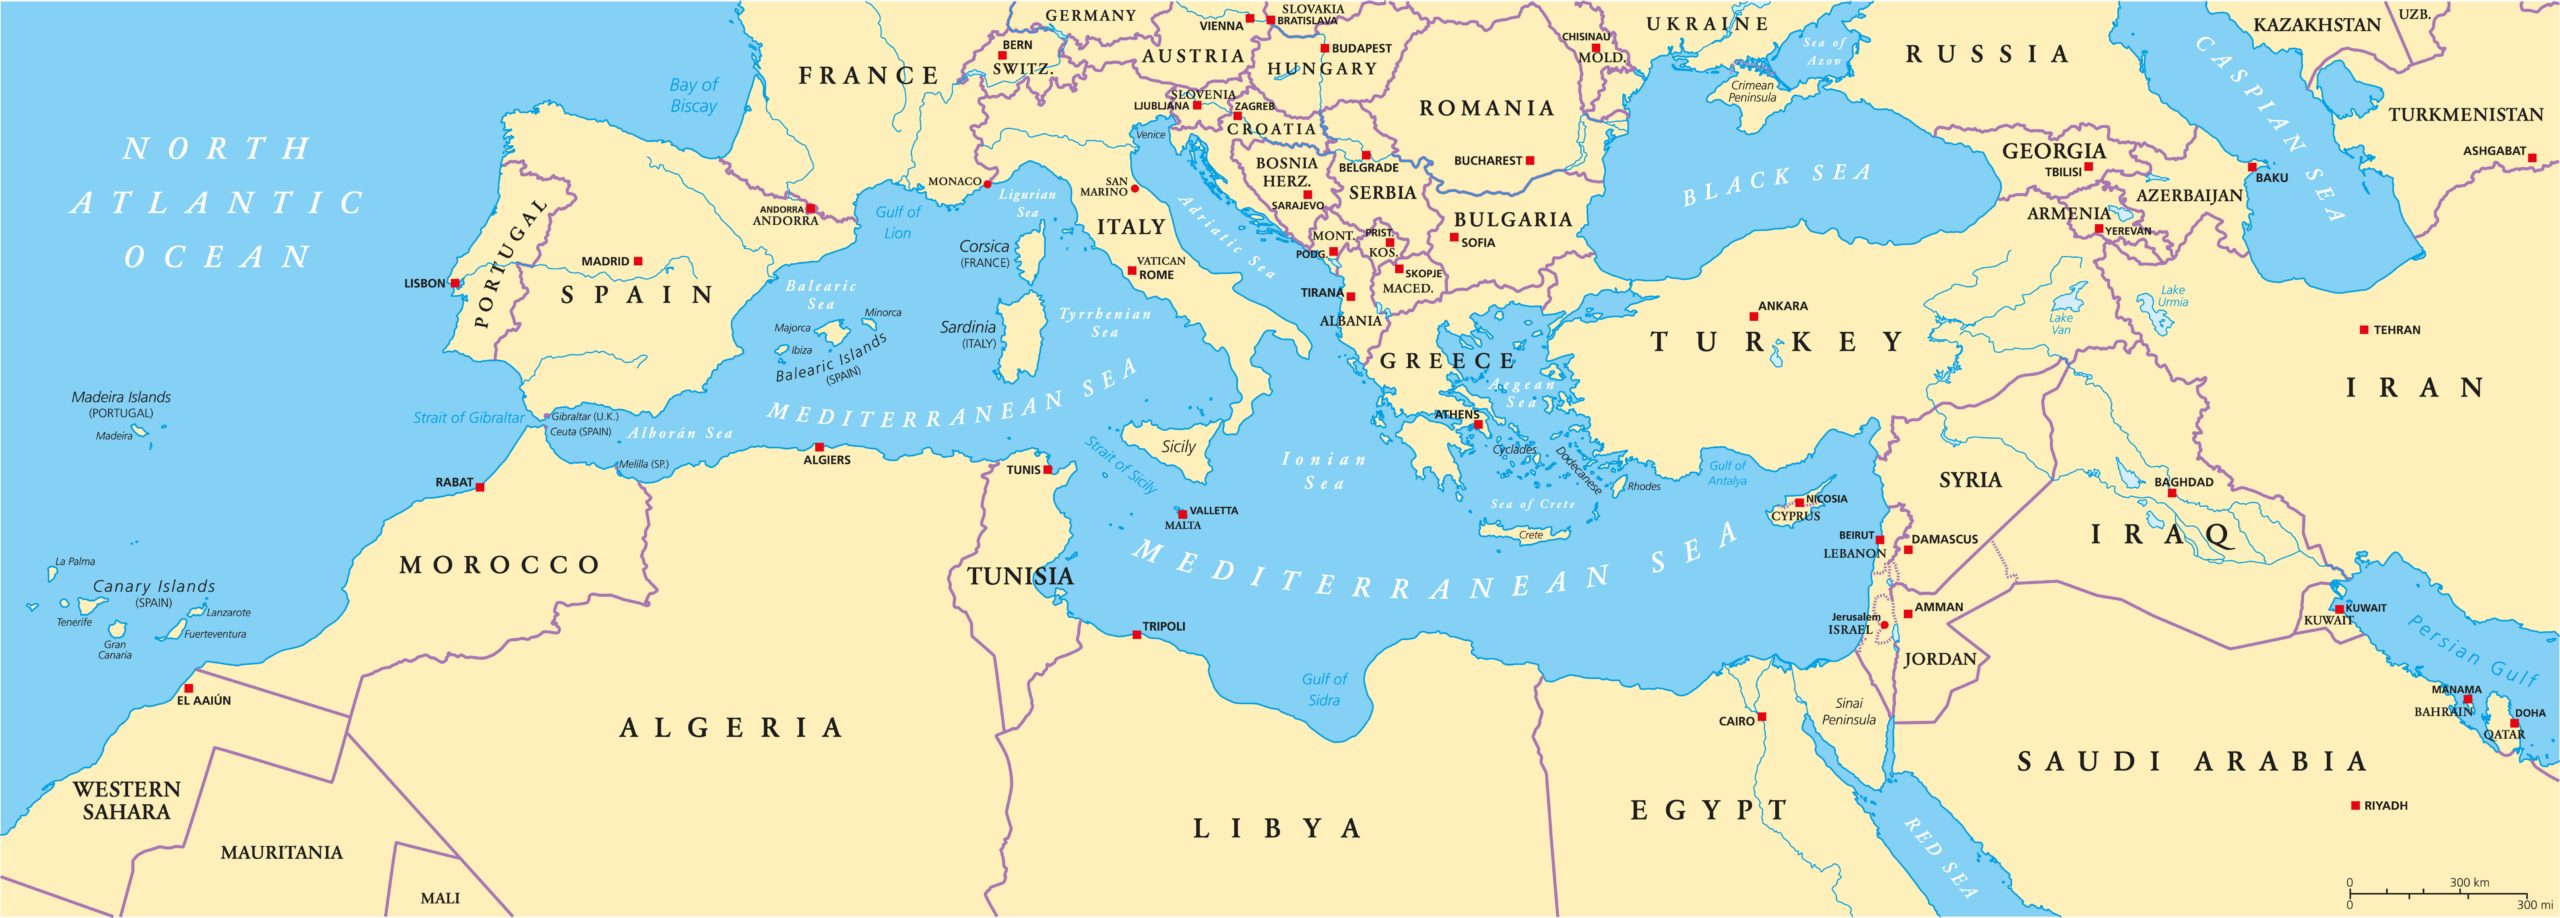 Shutter Stock/ دول البحر الأبيض المتوسط